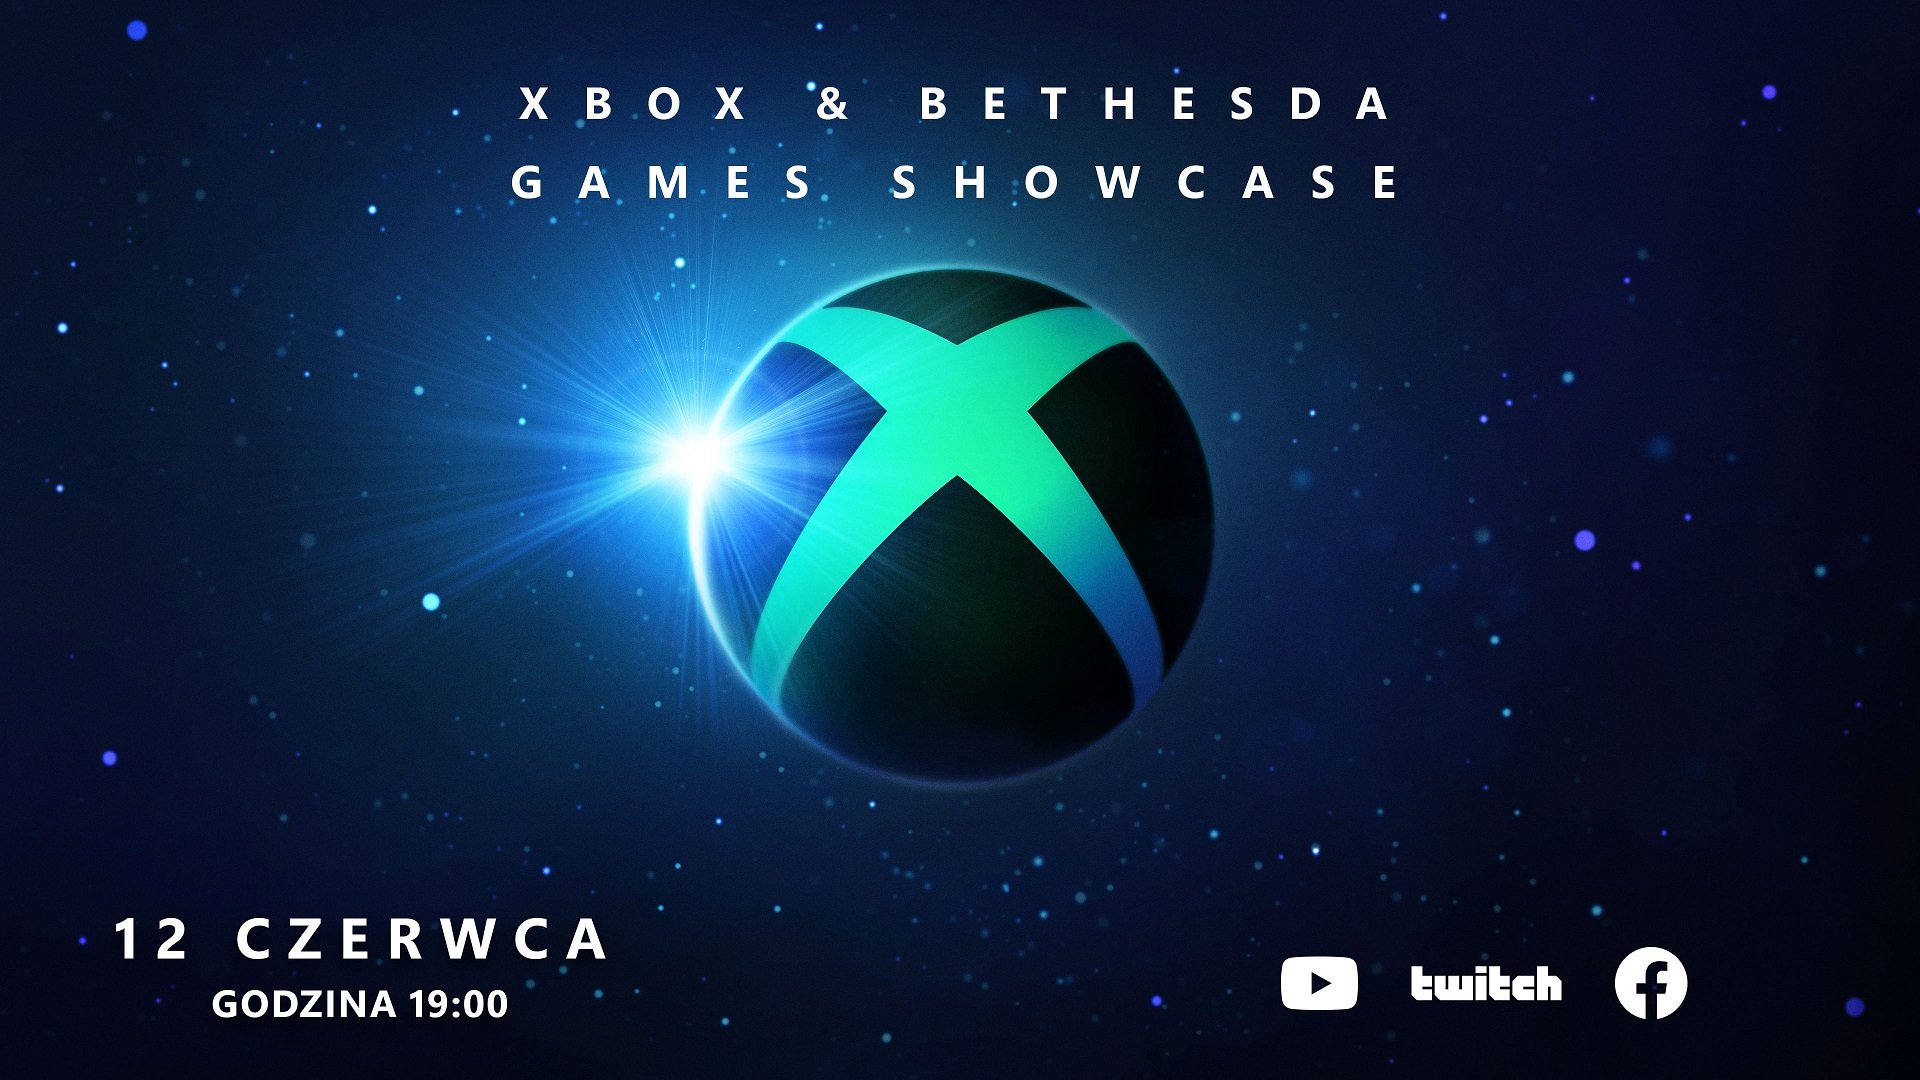 Xbox & Bethesda - grafika promująca konferencję